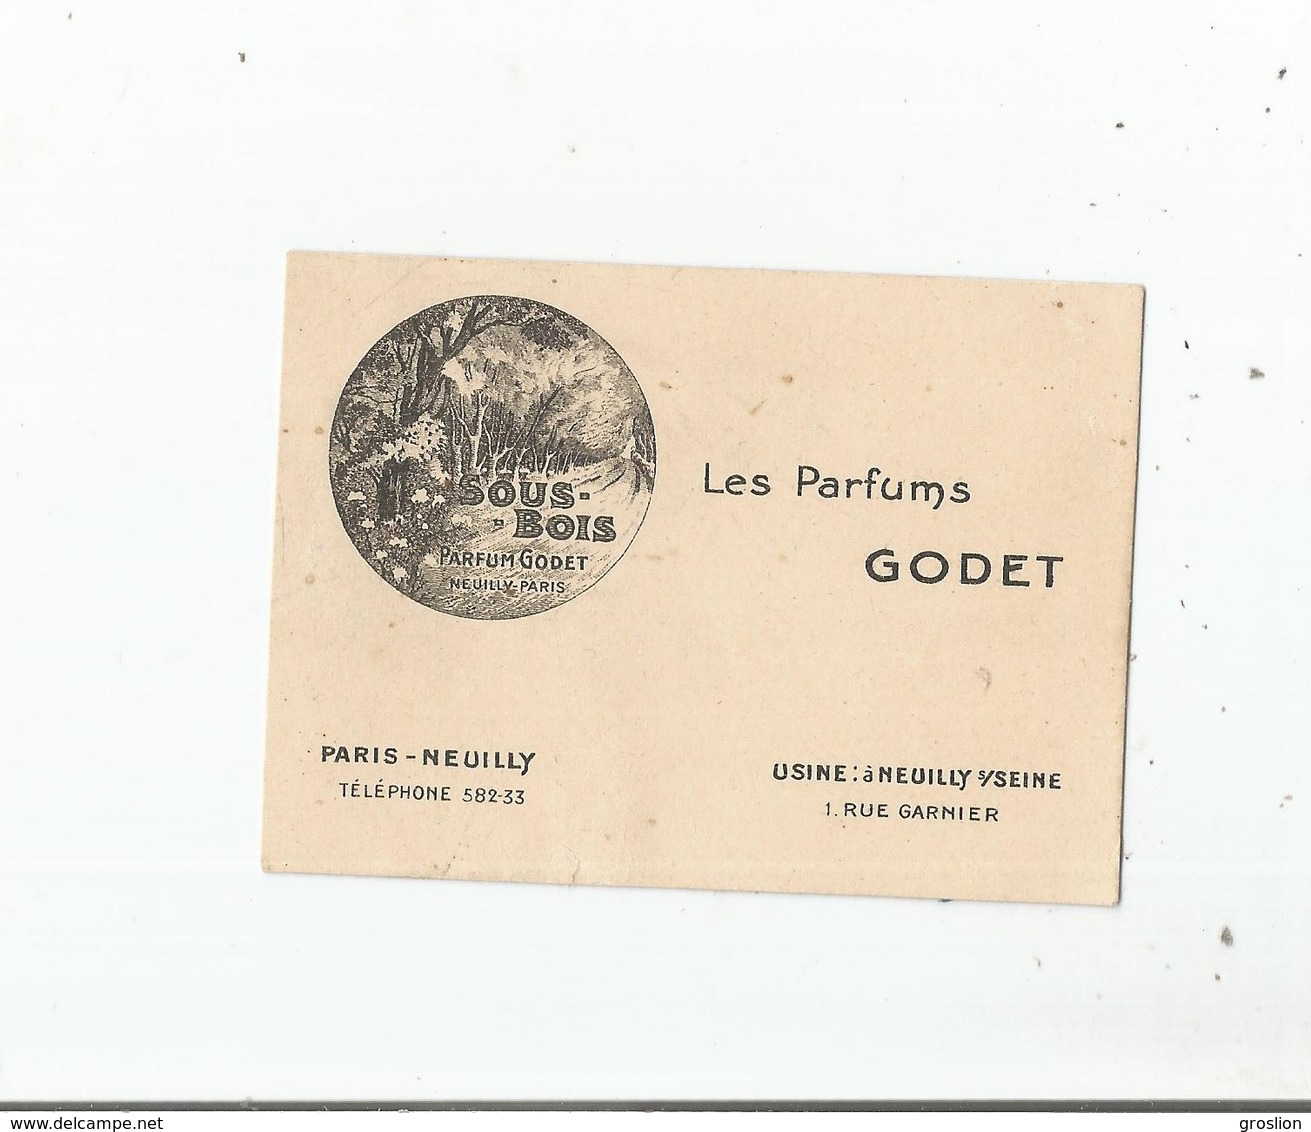 CARTE PARFUMEE ANCIENNE SOUS BOIS DES PARFUMS GODET PARIS -NEUILLY - Anciennes (jusque 1960)